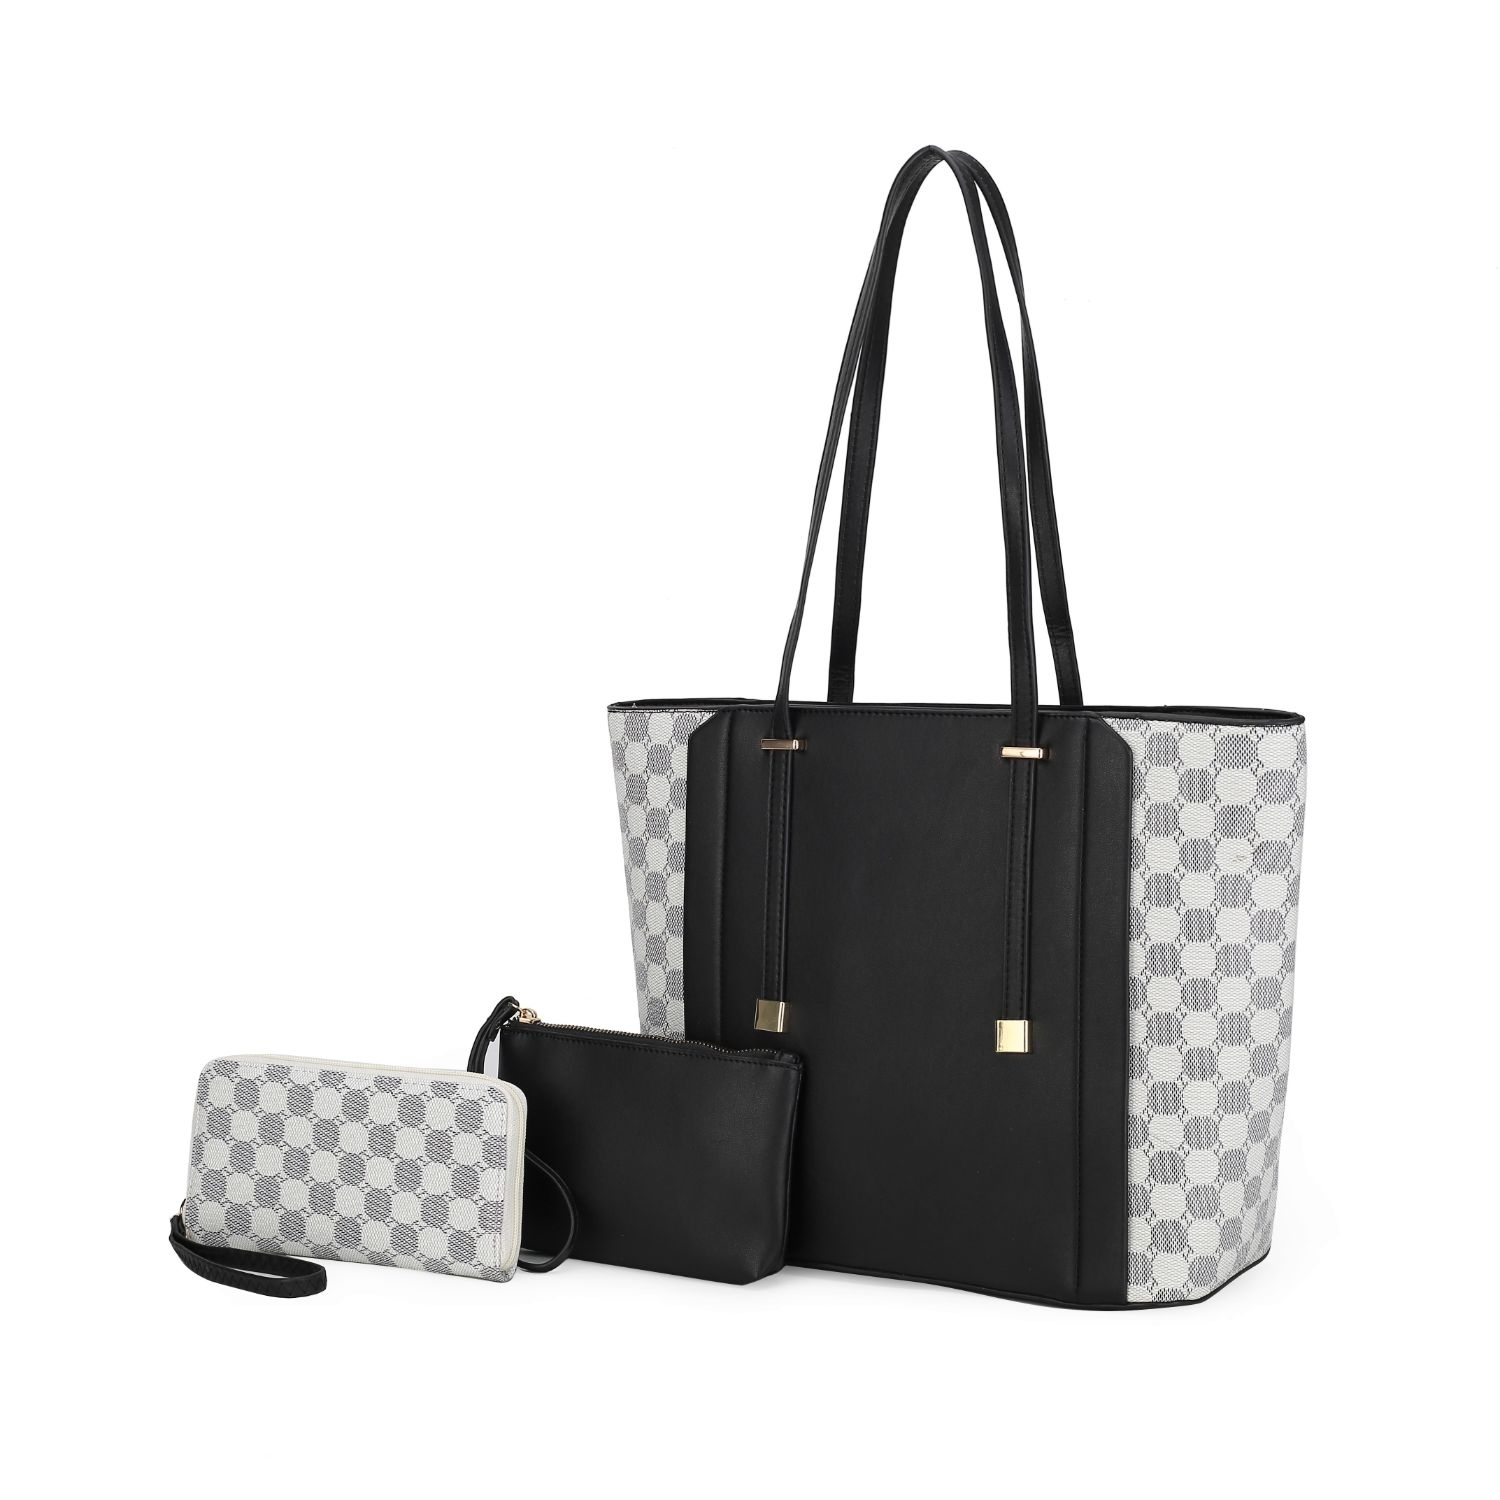 MKF Collection Giana Tote Handbag By Mia K -3 Piece Set - Black White